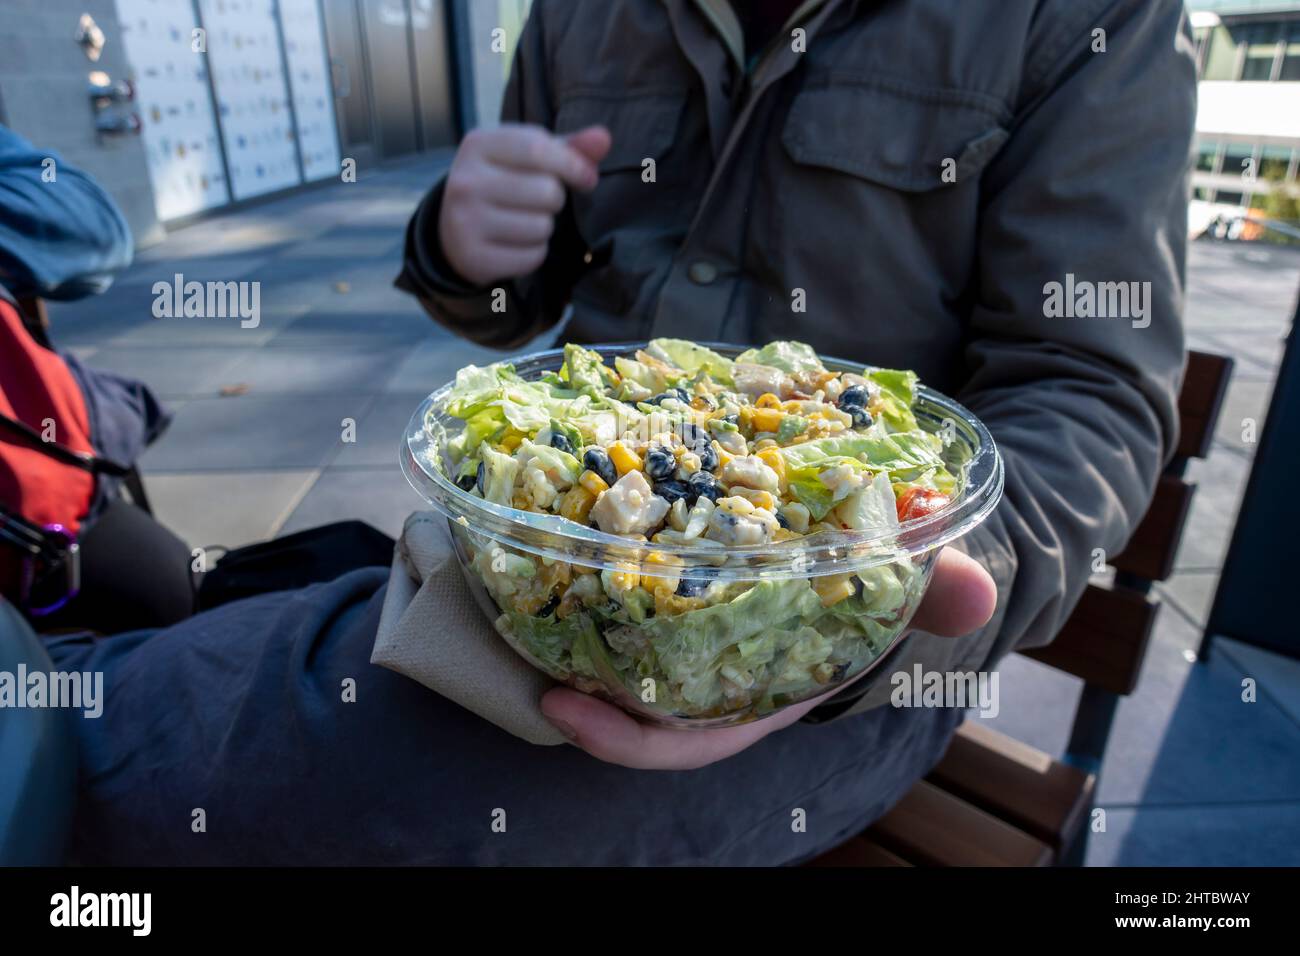 Kaukasisches Männchen in einer Winterjacke, das einen südwestlichen Salat in einem Plastikbehälter zum Mitnehmen an einem Tisch im Freien aushält. Stockfoto